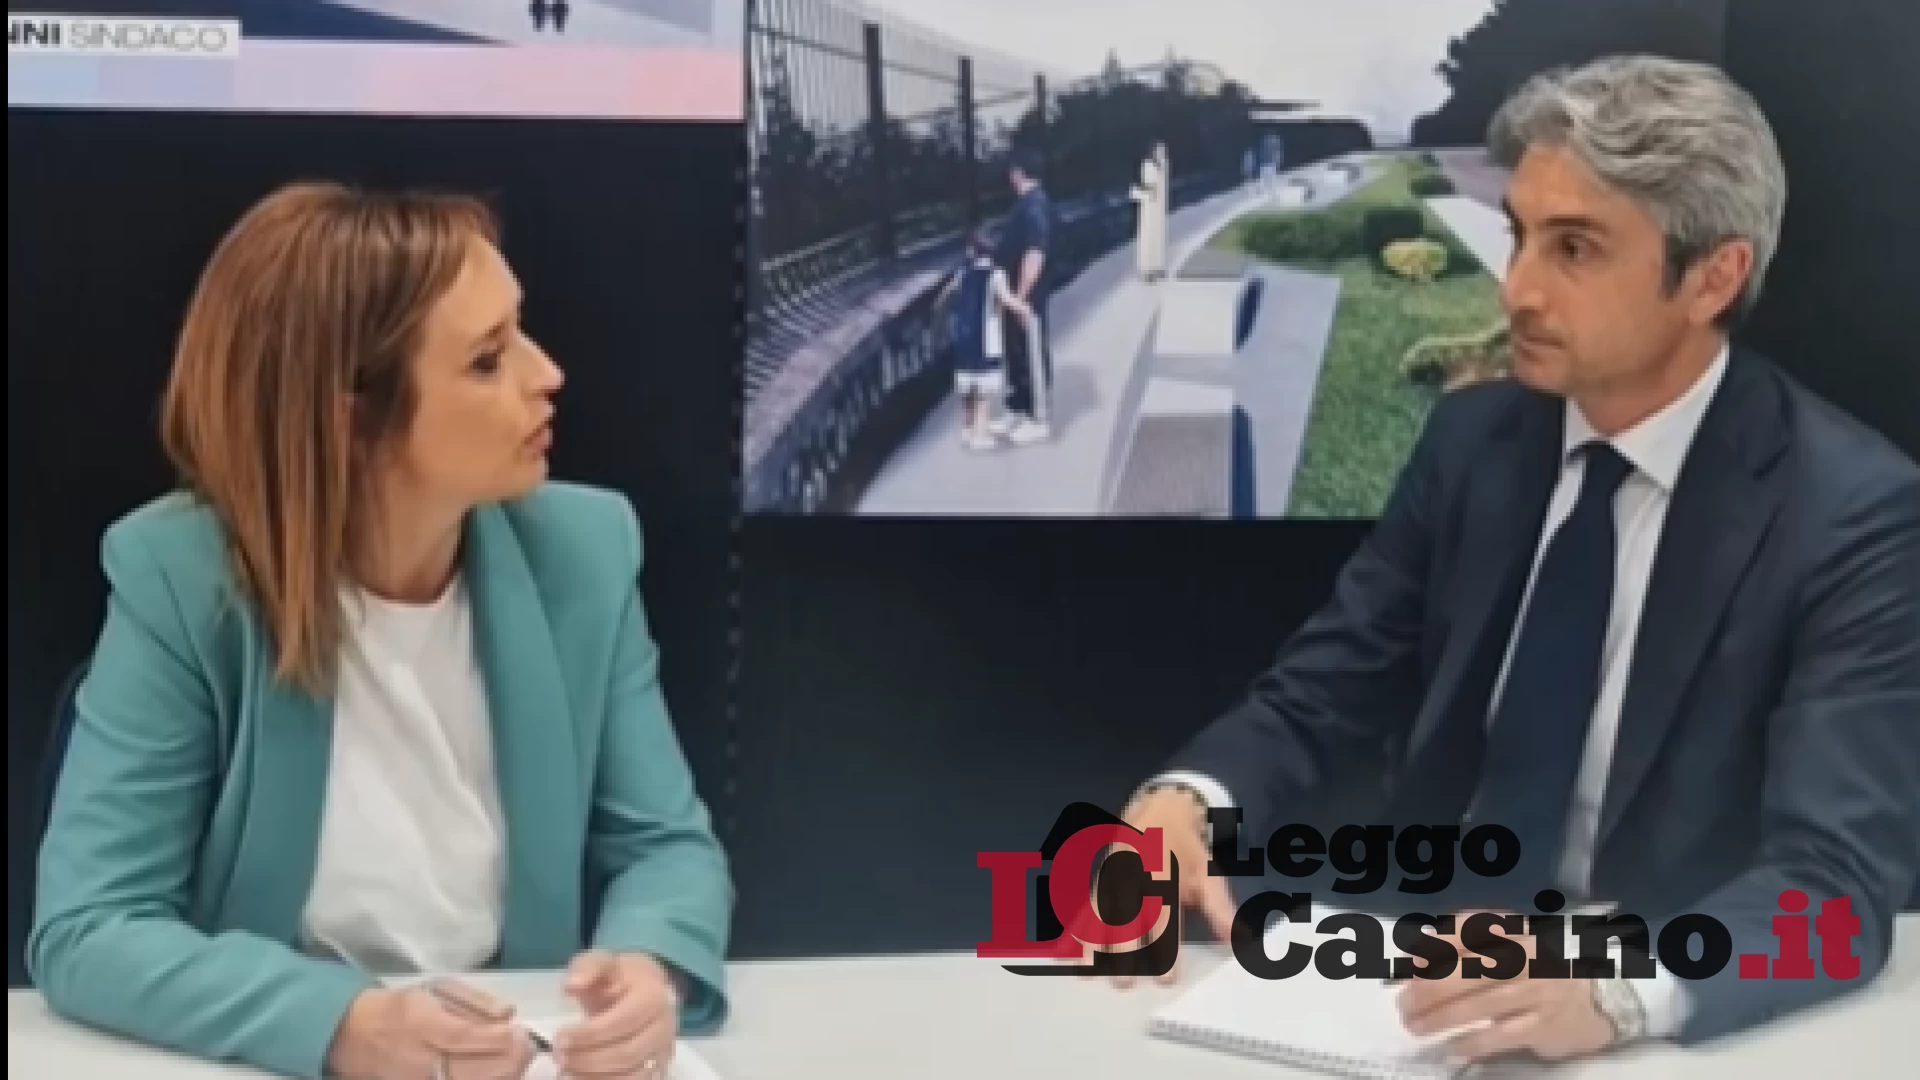 L'annuncio di Buongiovanni: "Finalmente strutture sportive anche per Cassino"